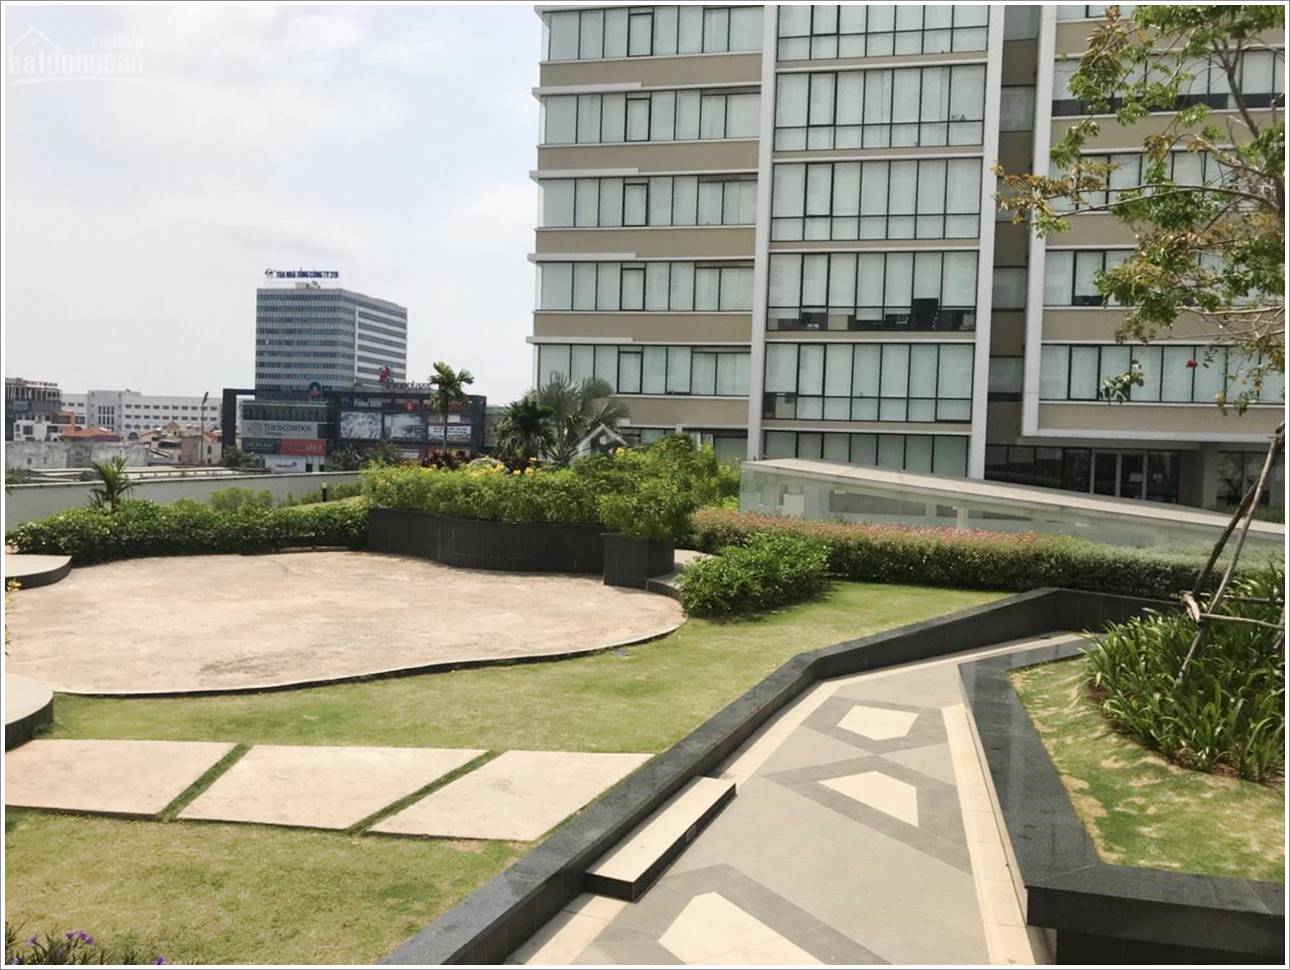 Cao ốc cho thuê văn phòng Cộng Hòa Garden, Quận Tân Bình, TPHCM - vlook.vn